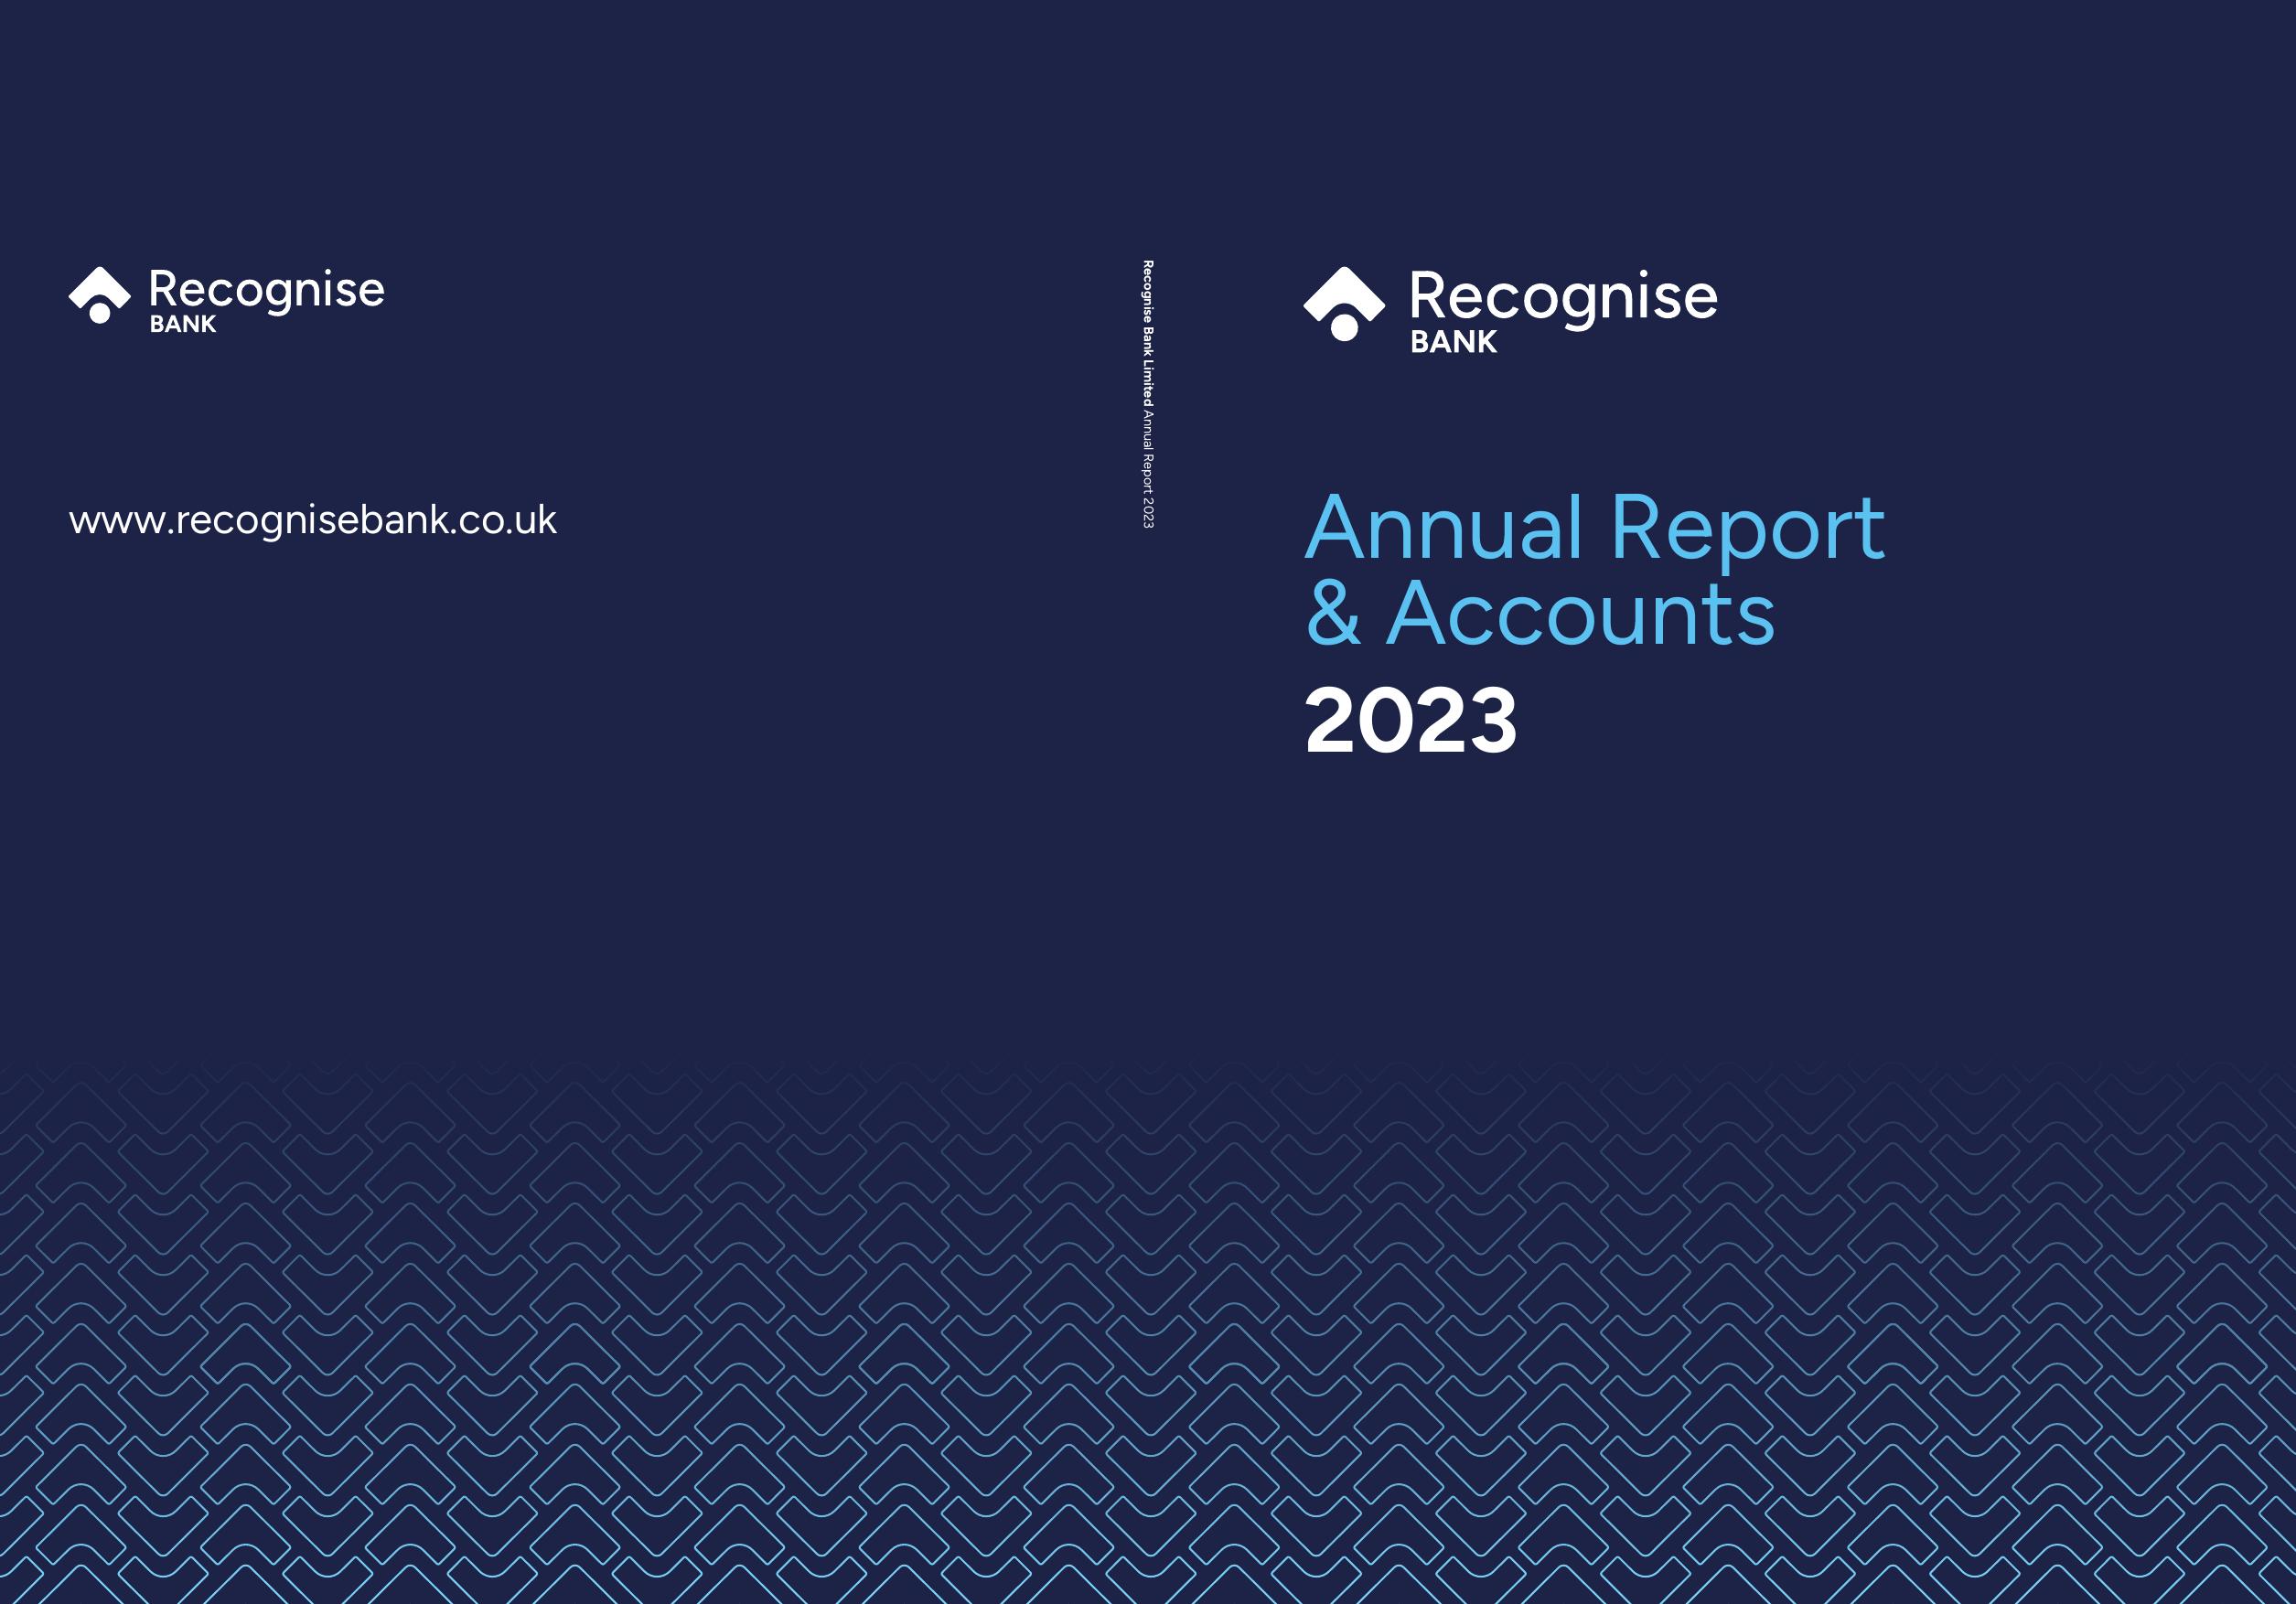 RECOGNISEBANK 2023 Annual Report